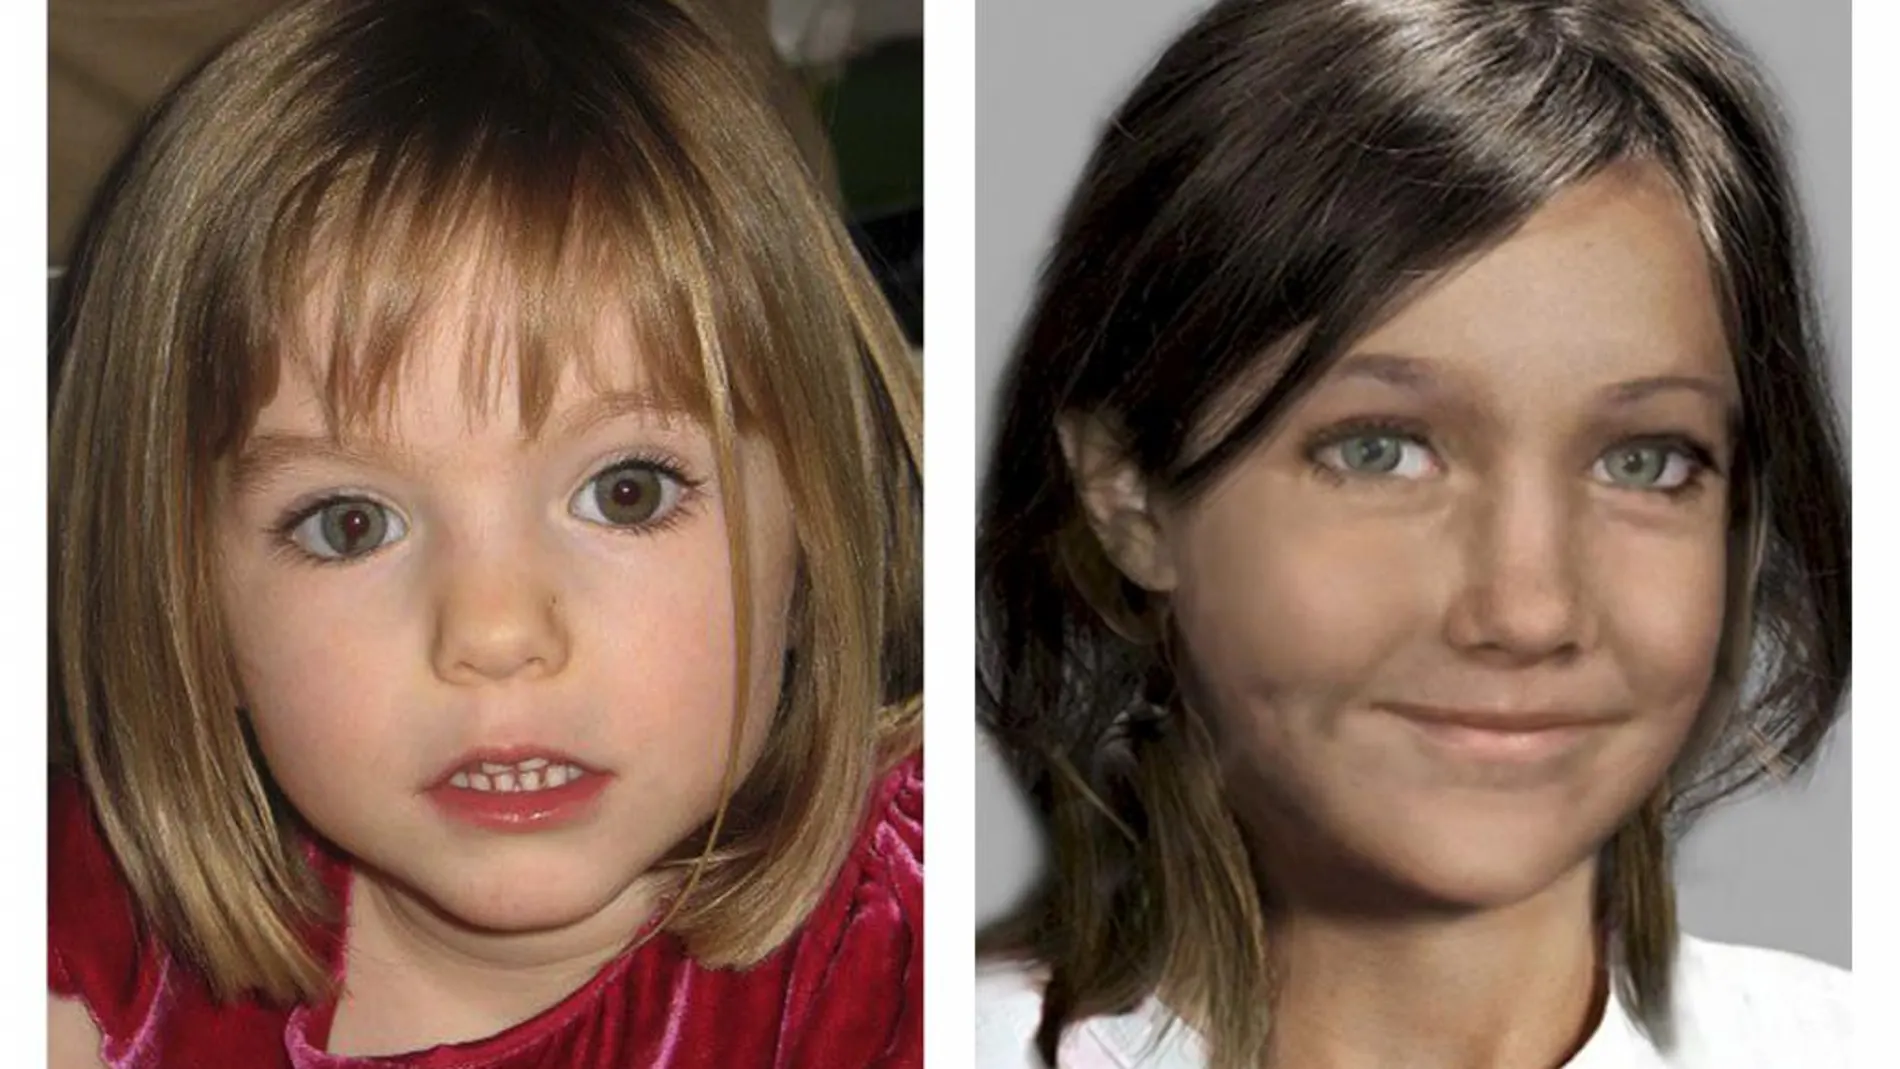 Imagen de Maddie antes de su desaparición y un retrato robot de cómo sería al cumplir los 9 años